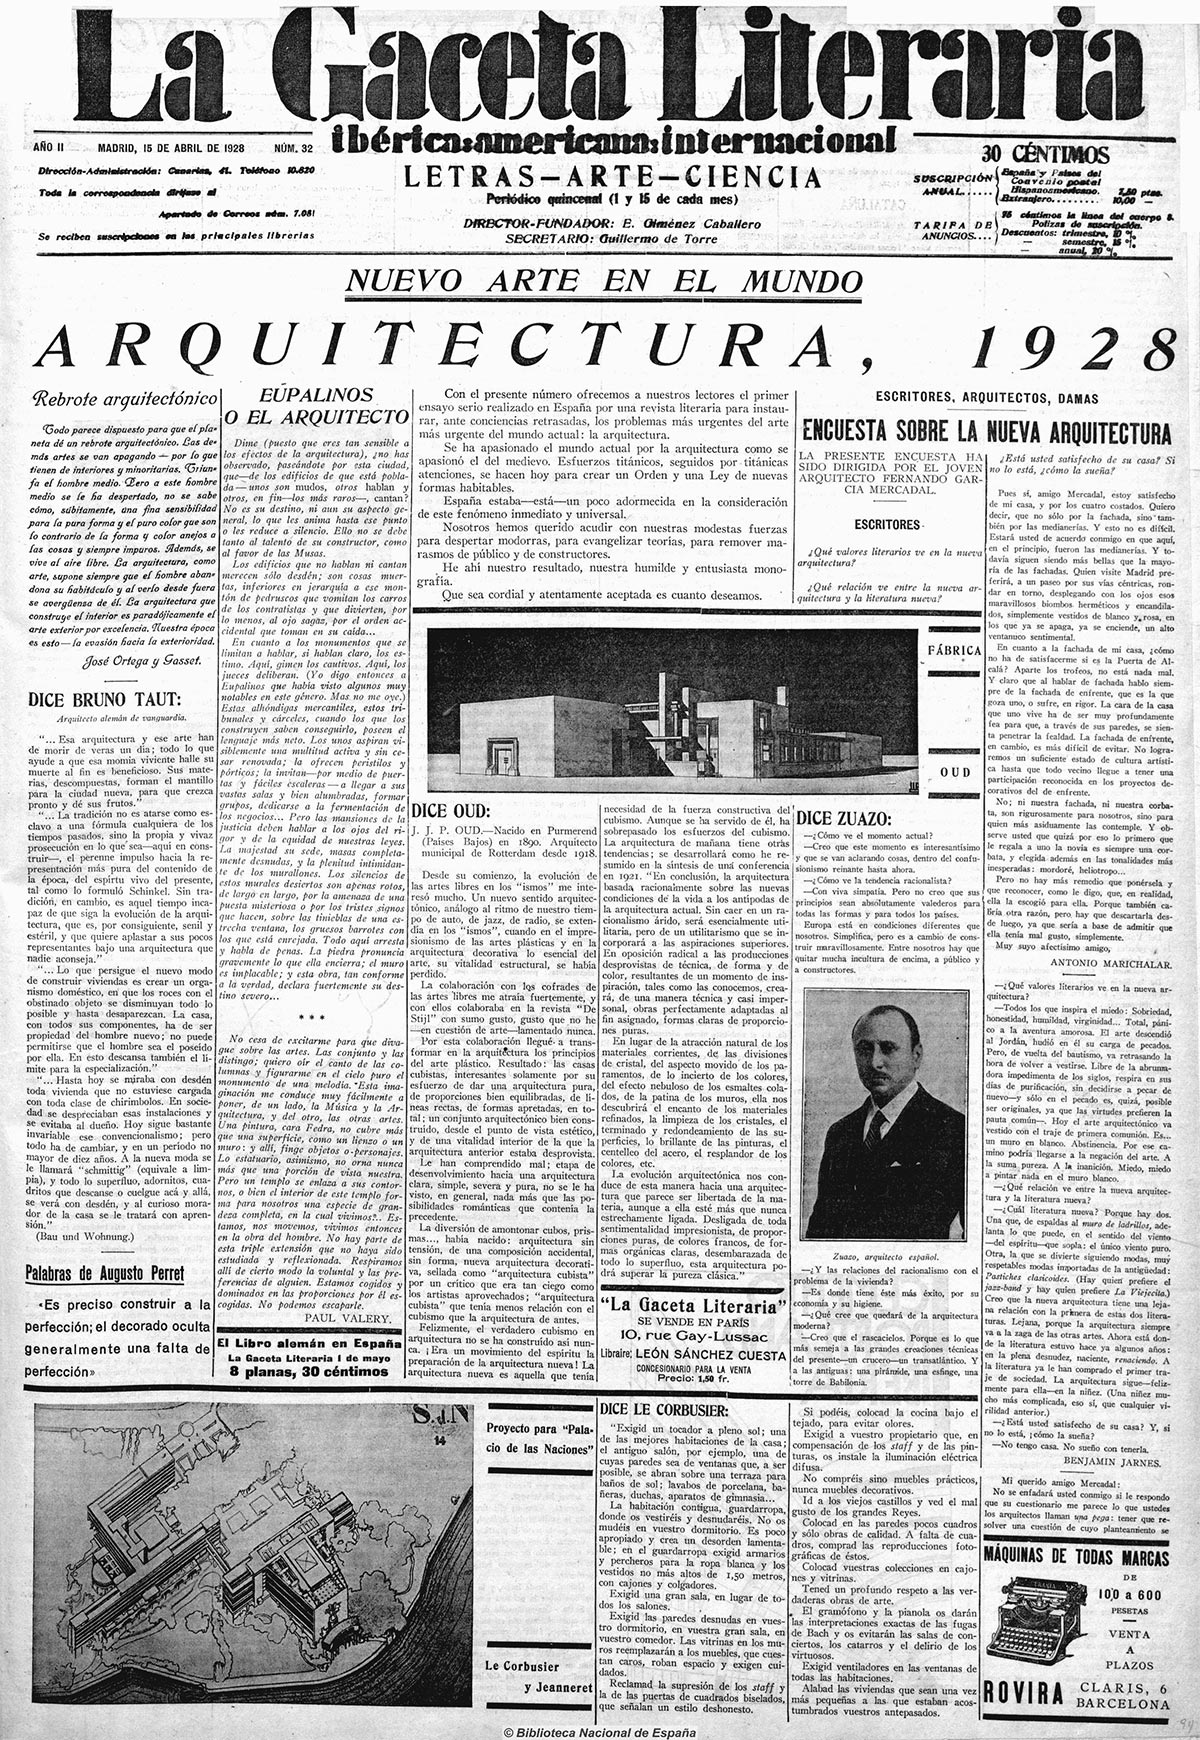 Encuesta sobre la nueva Arquitectura. La Gaceta Literaria. 15 abril 1928 | Fuente: Hemeroteca de la Biblioteca Nacional de España.